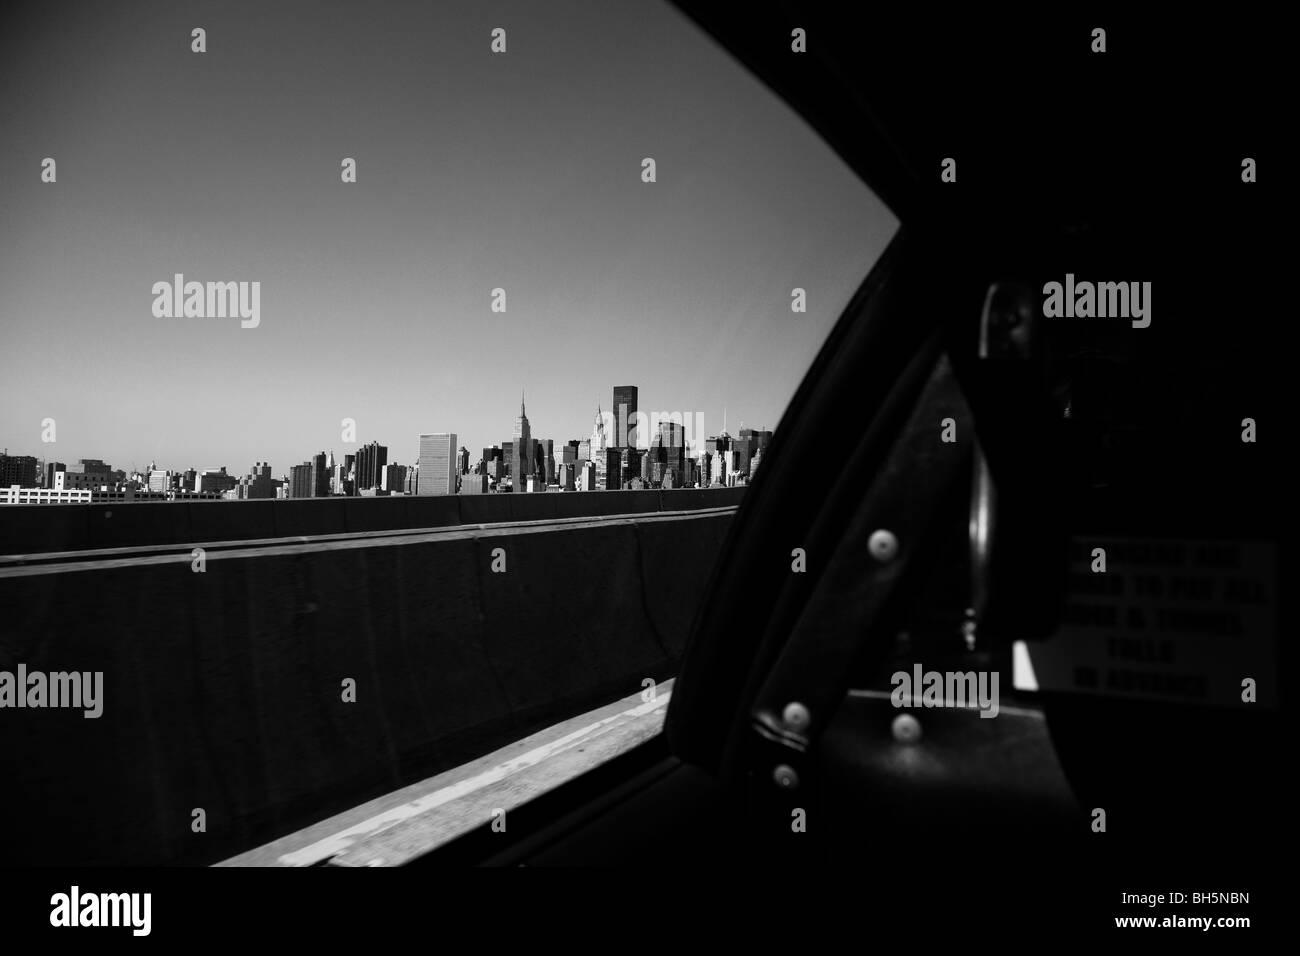 Die Skyline von Manhattan aus in ein NYC Taxi nähert sich Queensboro Bridge, New York City, New York USA Stockfoto